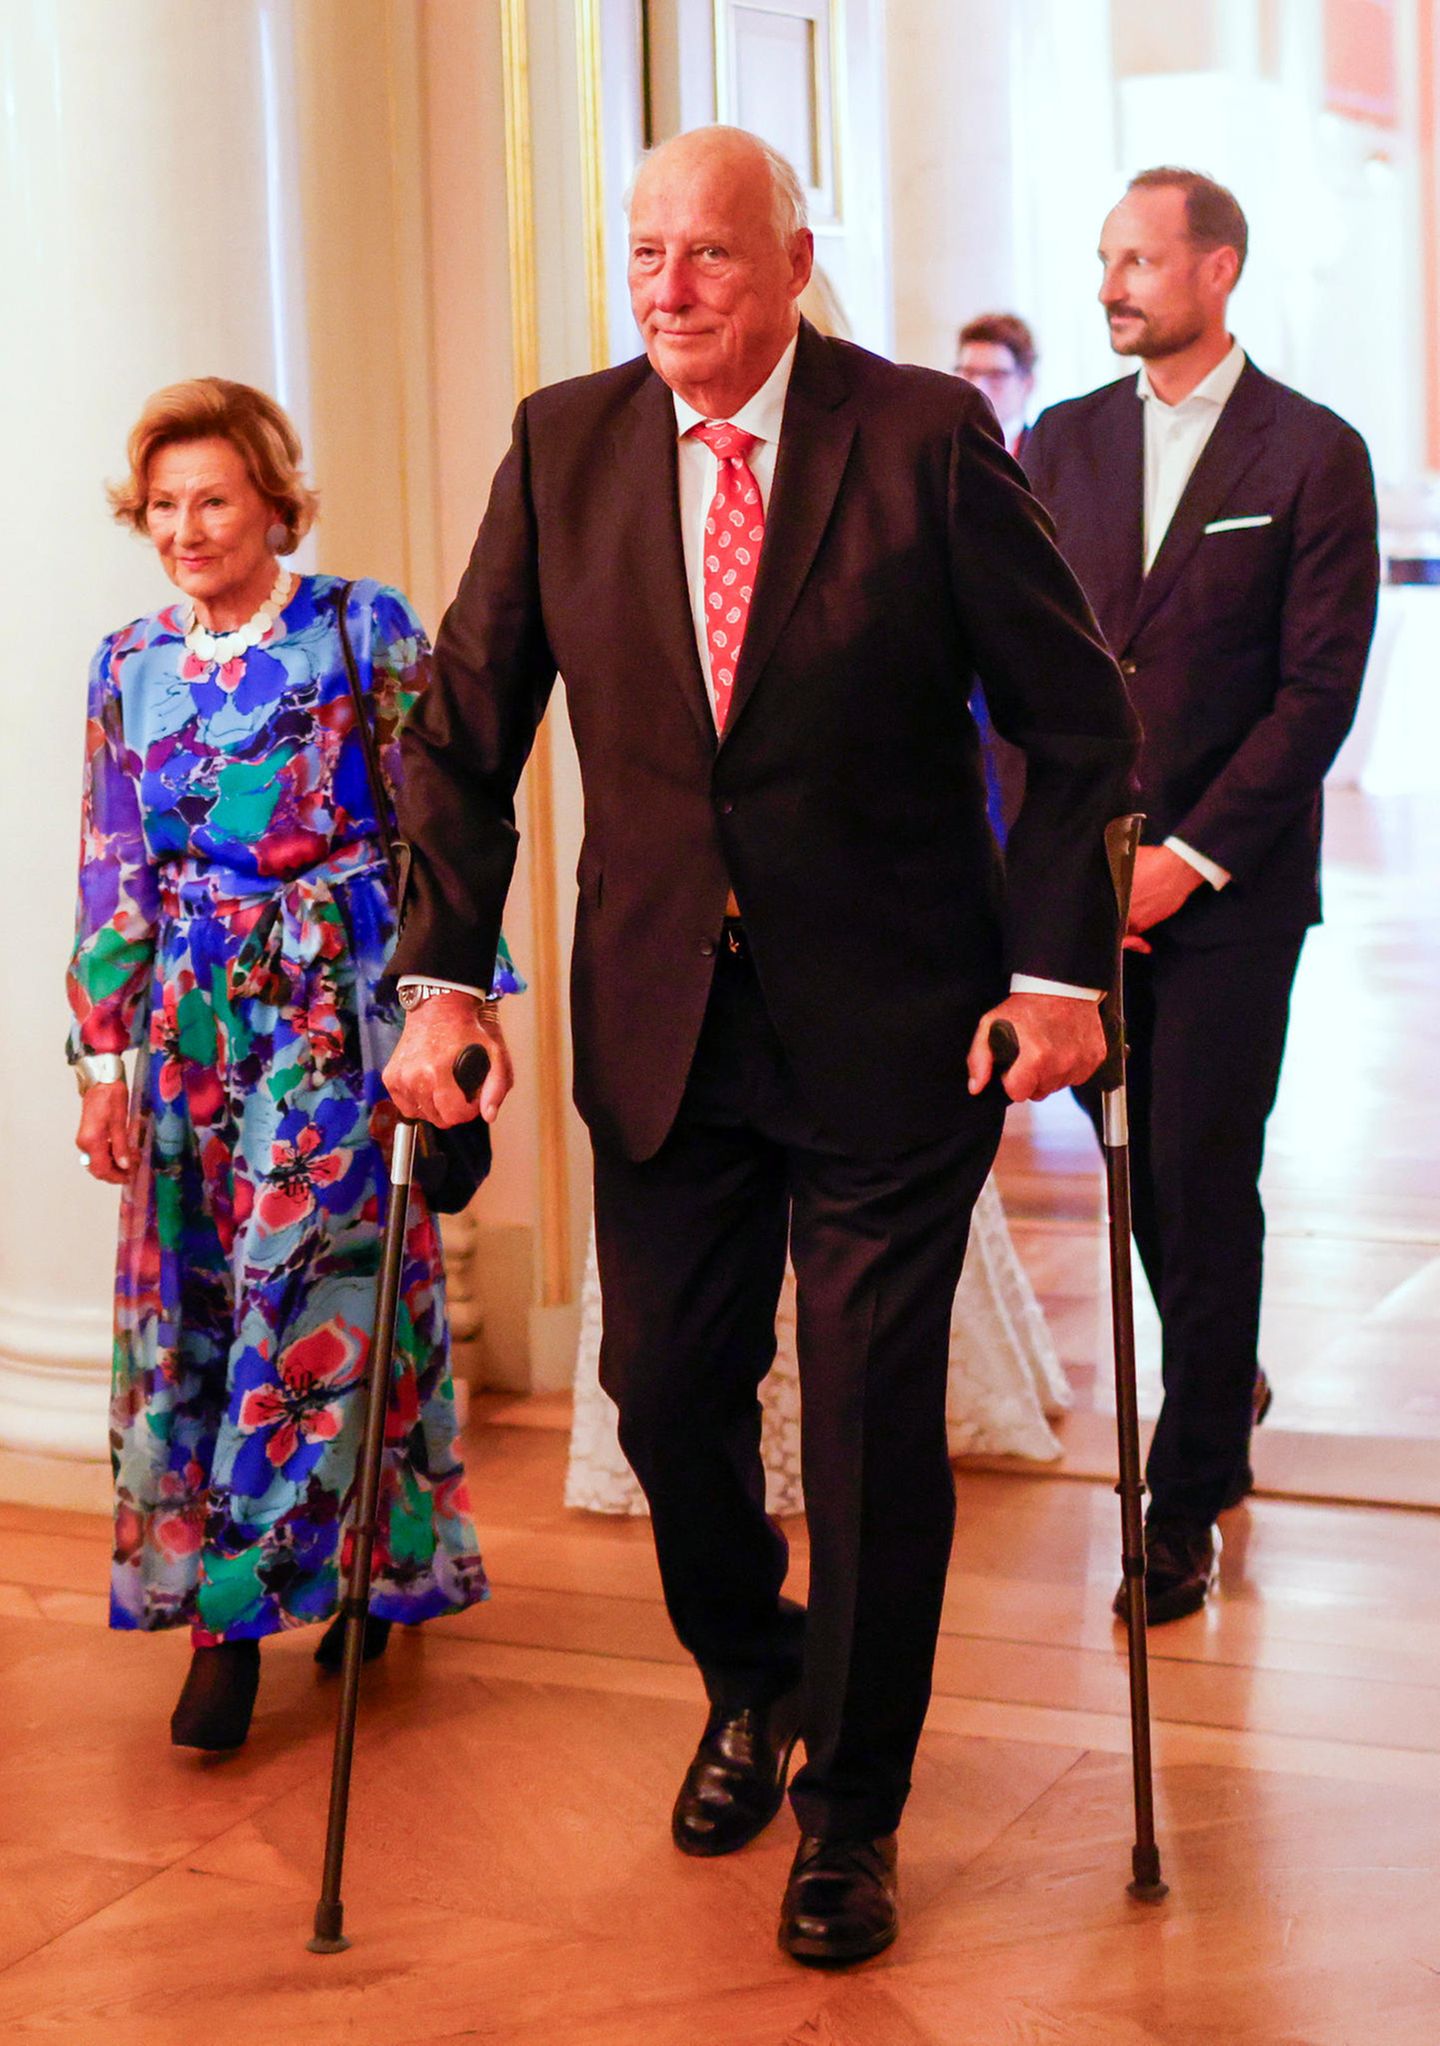 Die großen Feierlichkeiten anlässlich der 50. Geburtstage von Kronprinz Haakon und seiner Frau Kronprinzessin Mette-Marit im Königlichen Schloss können beginnen! Ganz vorne mit dabei sind die stolzen Eltern und Schwiegereltern König Harald und Königin Sonja.